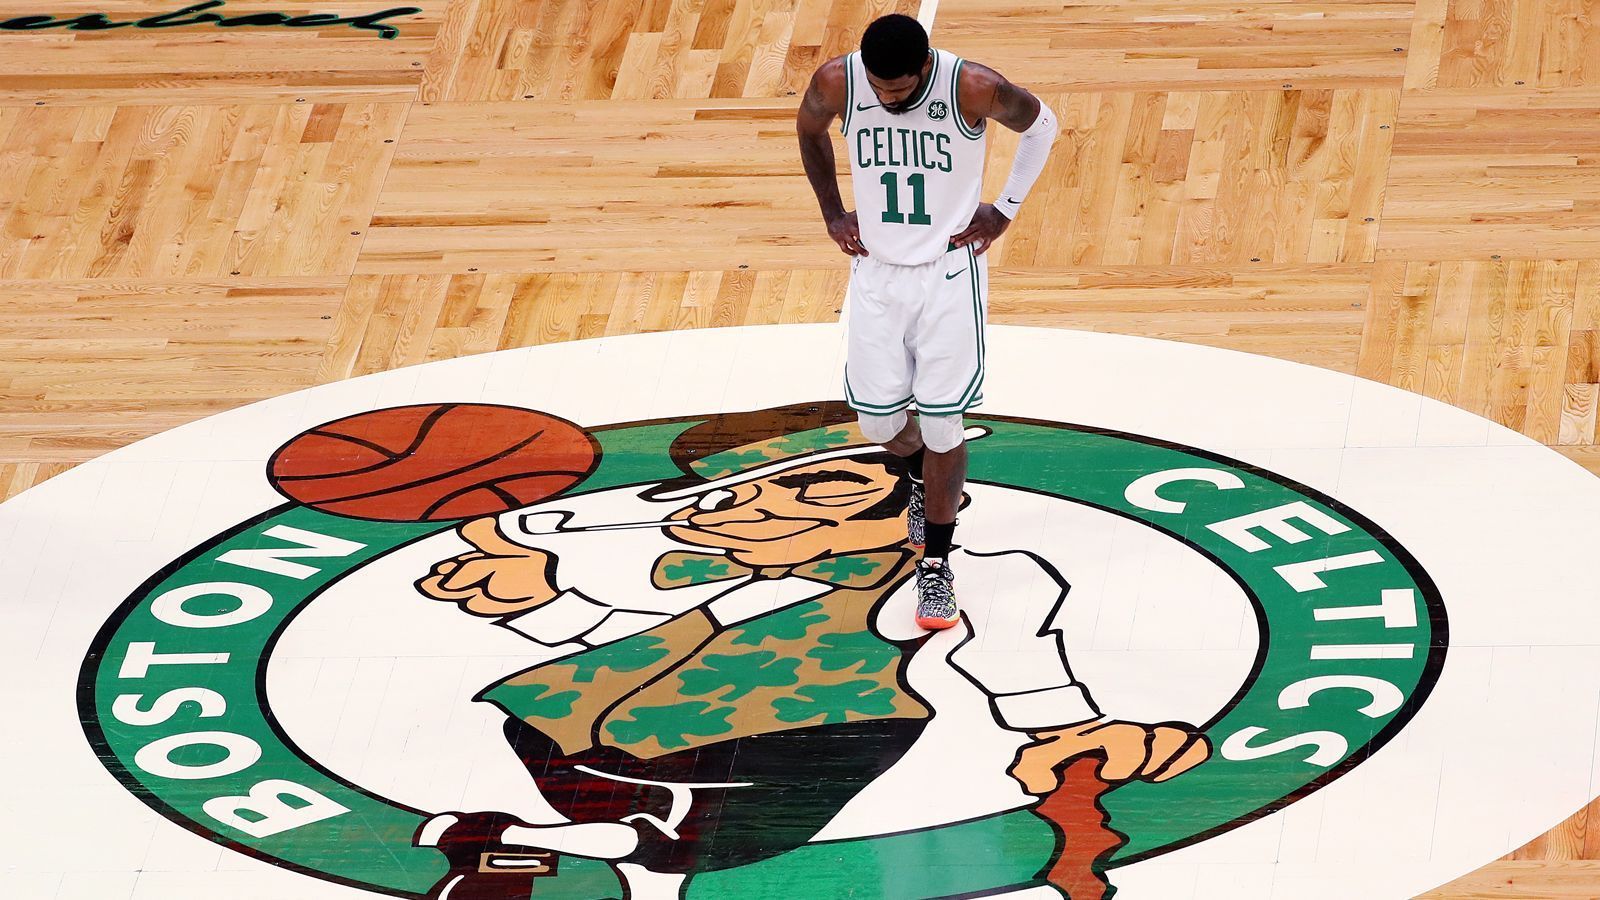 
                <strong>Kyrie Irving - Gebrochenes Versprechen an die Celtics-Fans </strong><br>
                Später gab Kyrie zu, sich bei LeBron James entschuldigen zu wollen. Es sei schwierig, junge Spieler als Führungsperson zum Erfolg zu führen und dem eigenen Vorbild gerecht zu werden. In amerikanischen Medien wurden Spannungen mit Tatum und Brown interpretiert, die später dementiert wurden. Trotzdem kam es zum Bruch mit der Celtics-Franchise. Gegenüber den eigenen Fans kündigte Irving 2018 an, seinen auslaufenden Vertrag im Sommer verlängern zu wollen. Ein Versprechen, das er nicht halten konnte. Im Sommer 2019 schloss er sich gemeinsam mit Kevin Durant den Brooklyn Nets an und zog somit den großen Ärger der Boston-Fans auf sich.
              